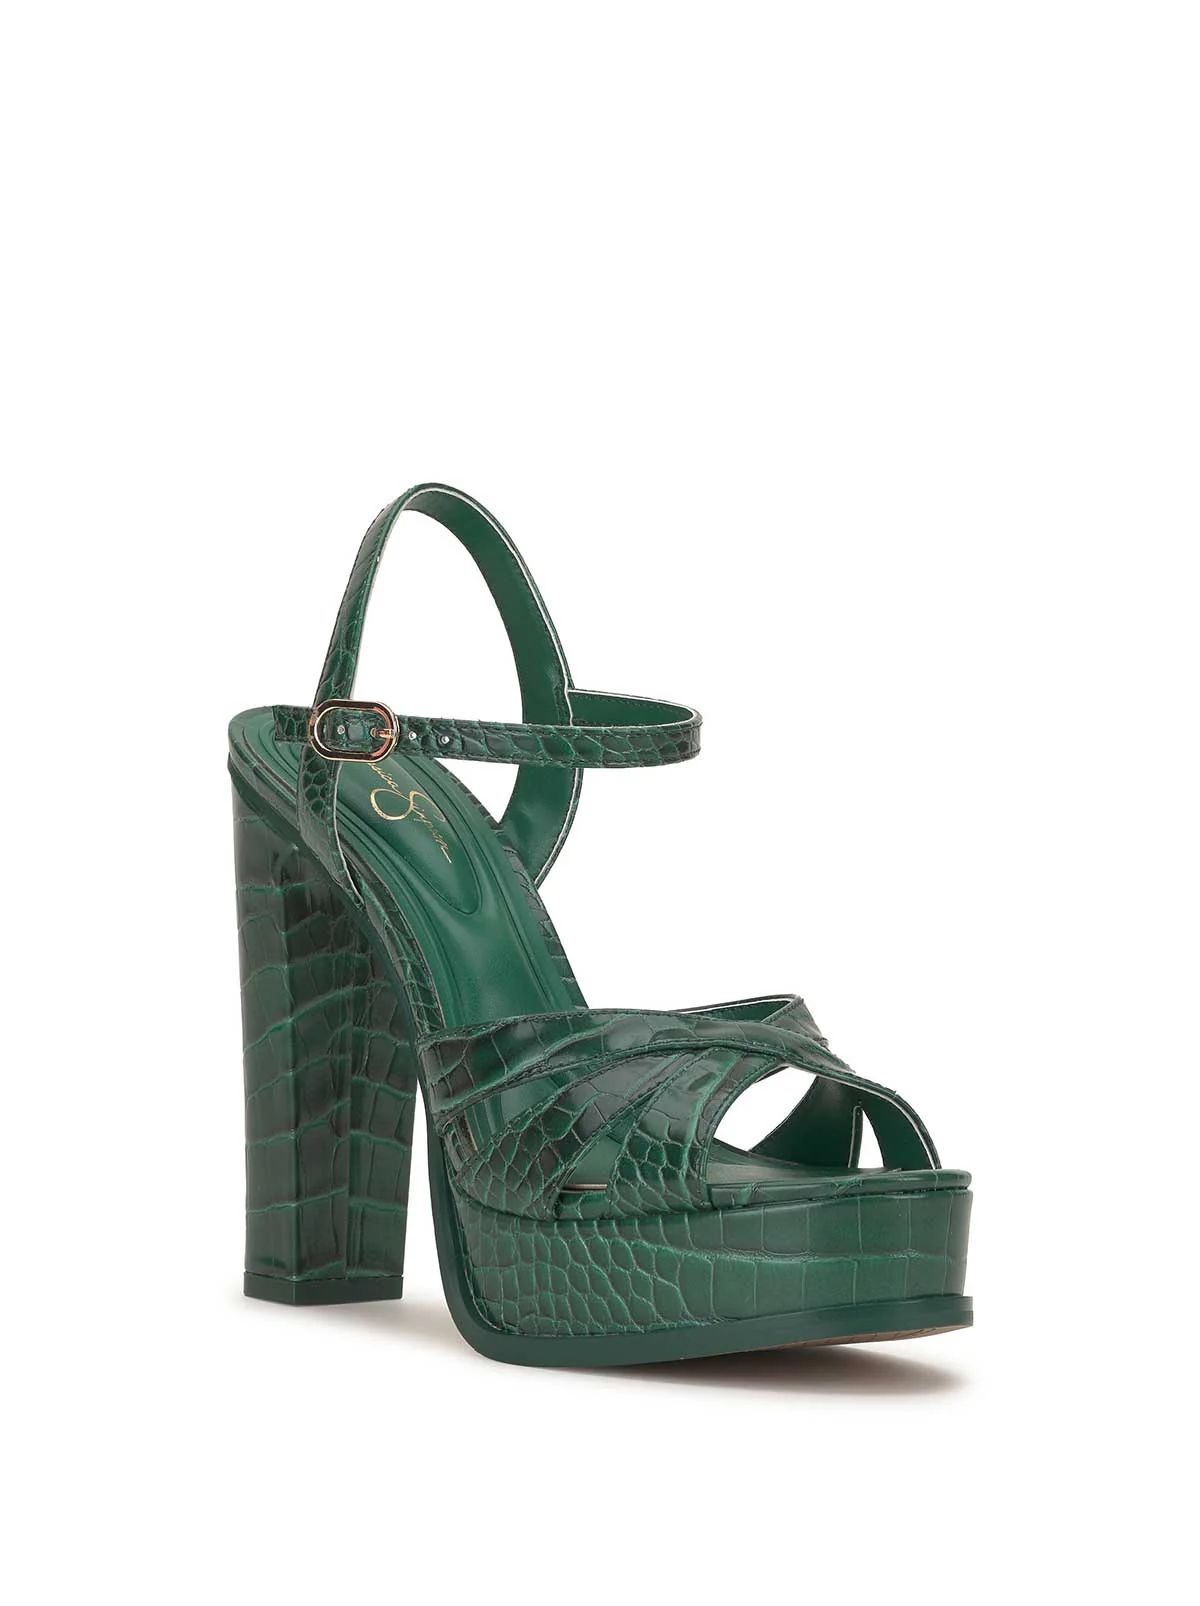 Giddings Platform Sandal in Green | Jessica Simpson E Commerce